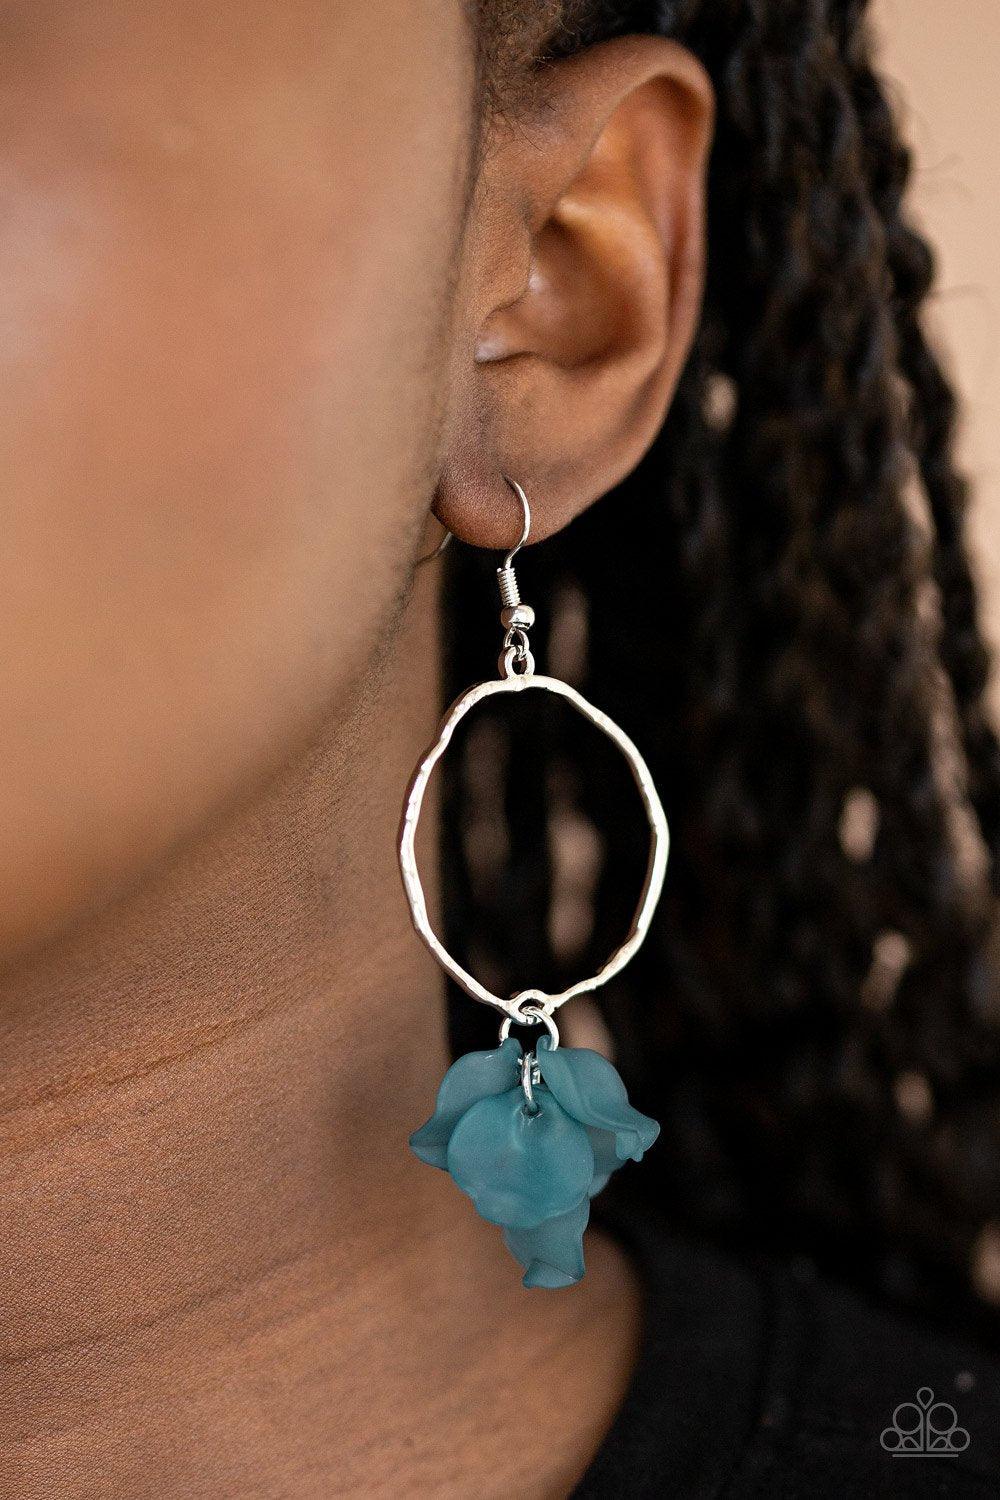 Petals On The Floor Blue Earrings - Jewelry by Bretta